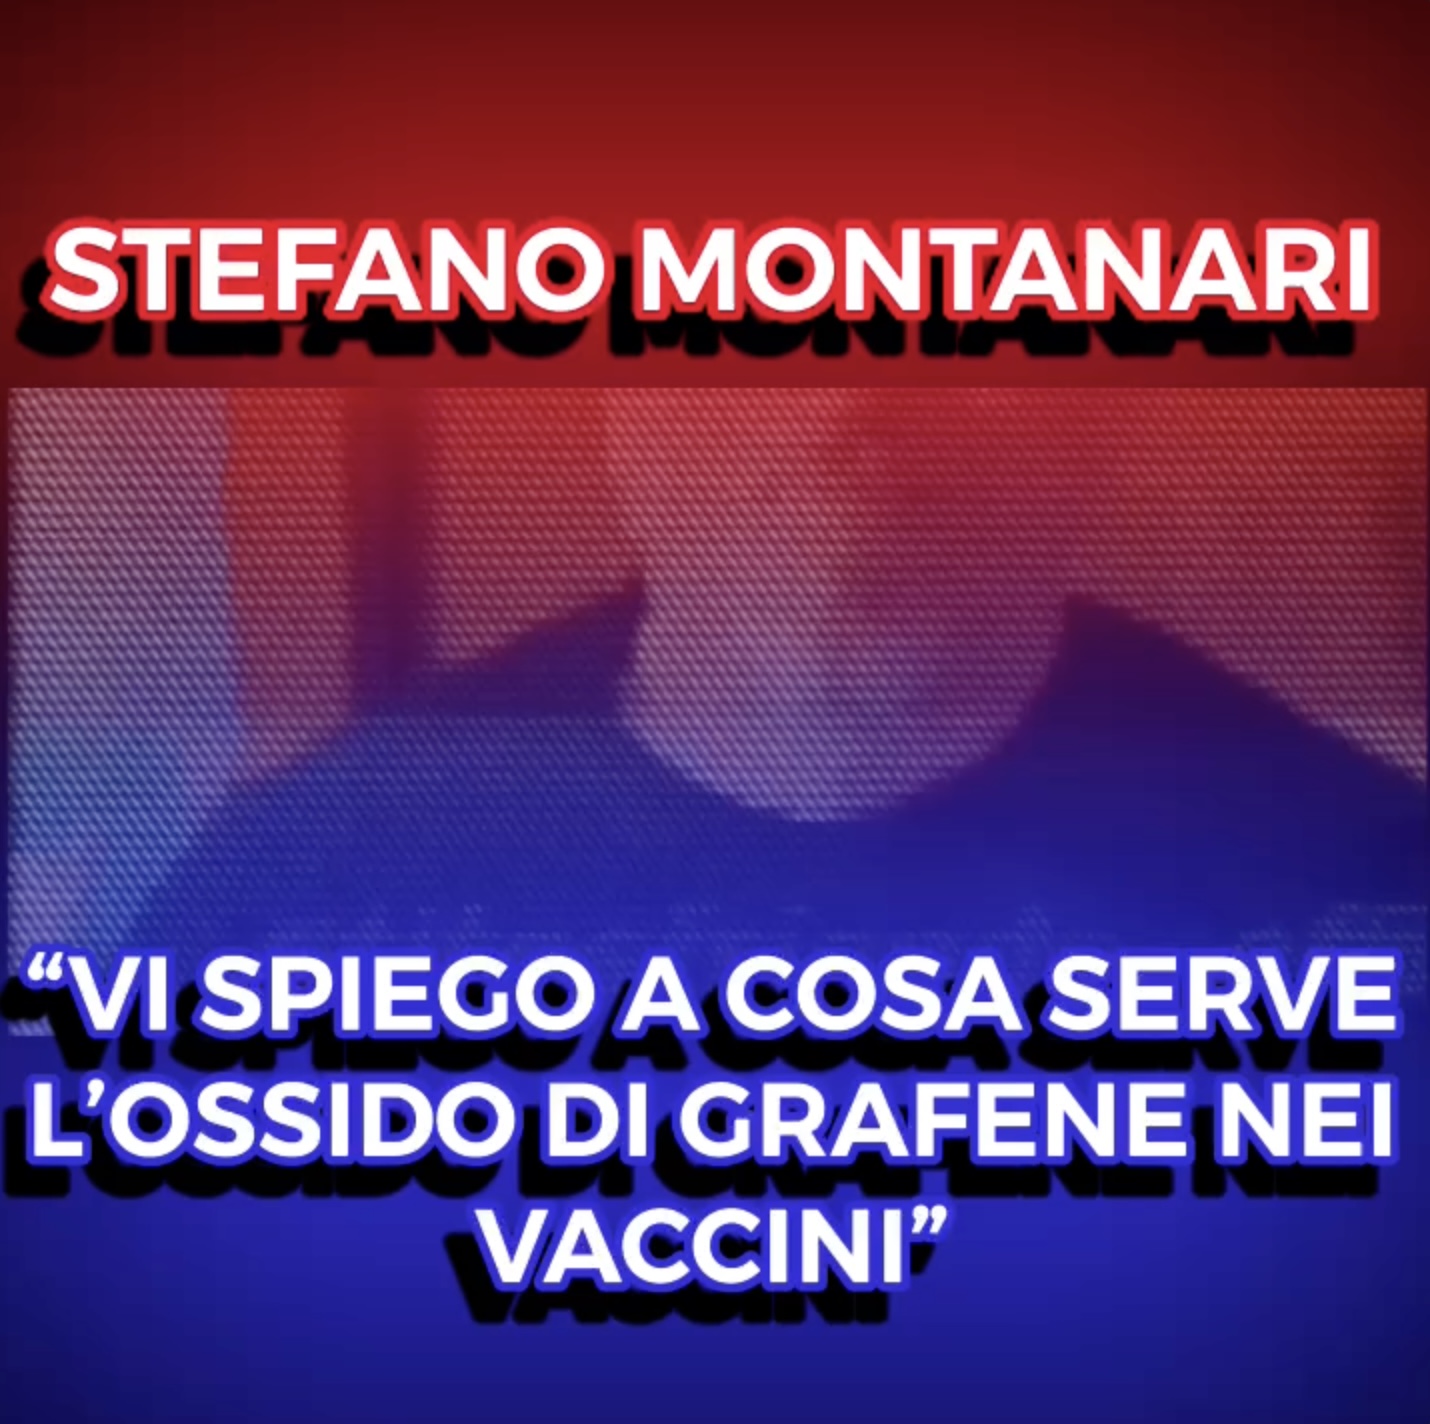 Video Shock!!! - Stefano Montanari - Vi spiego a cosa serve lossido di grafene nei vaccini